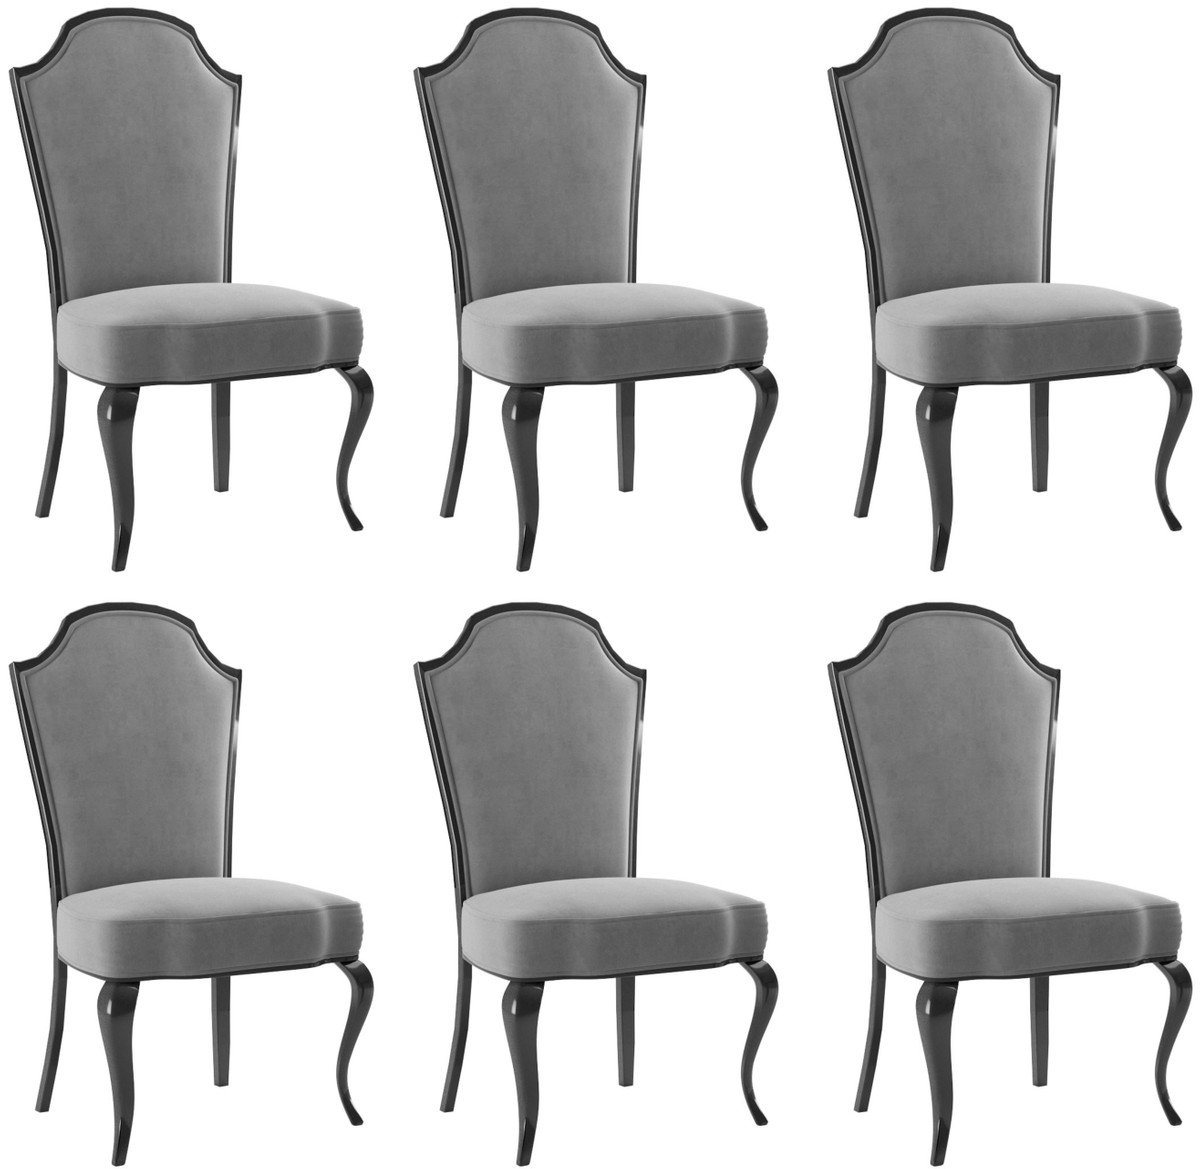 Casa Padrino Esszimmerstuhl Luxus Barock Esszimmer Stuhl Set Grau / Schwarz 55 x 53 x H. 113 cm - Barock Küchen Stühle 6er Set - Esszimmer Möbel im Barockstil von Casa Padrino